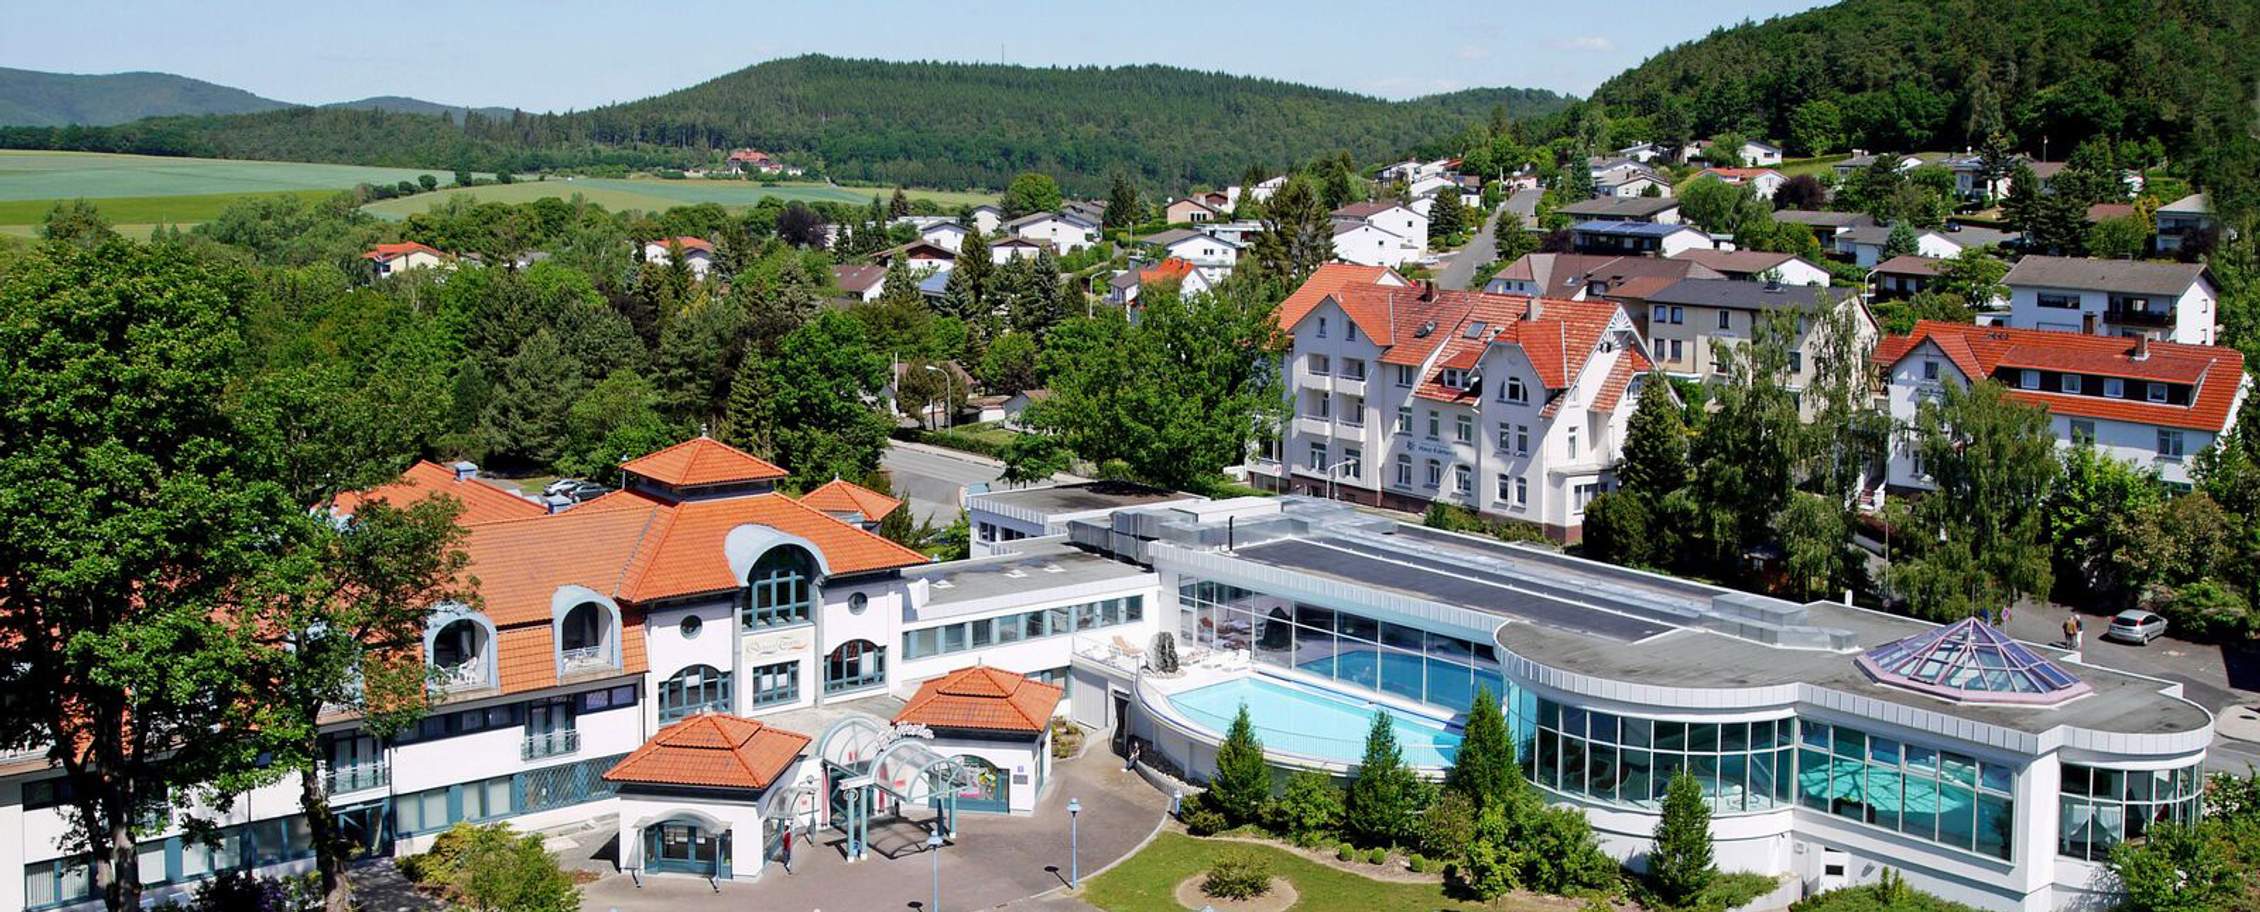 Göbel’s Hotel AquaVita - Bad Wildungen